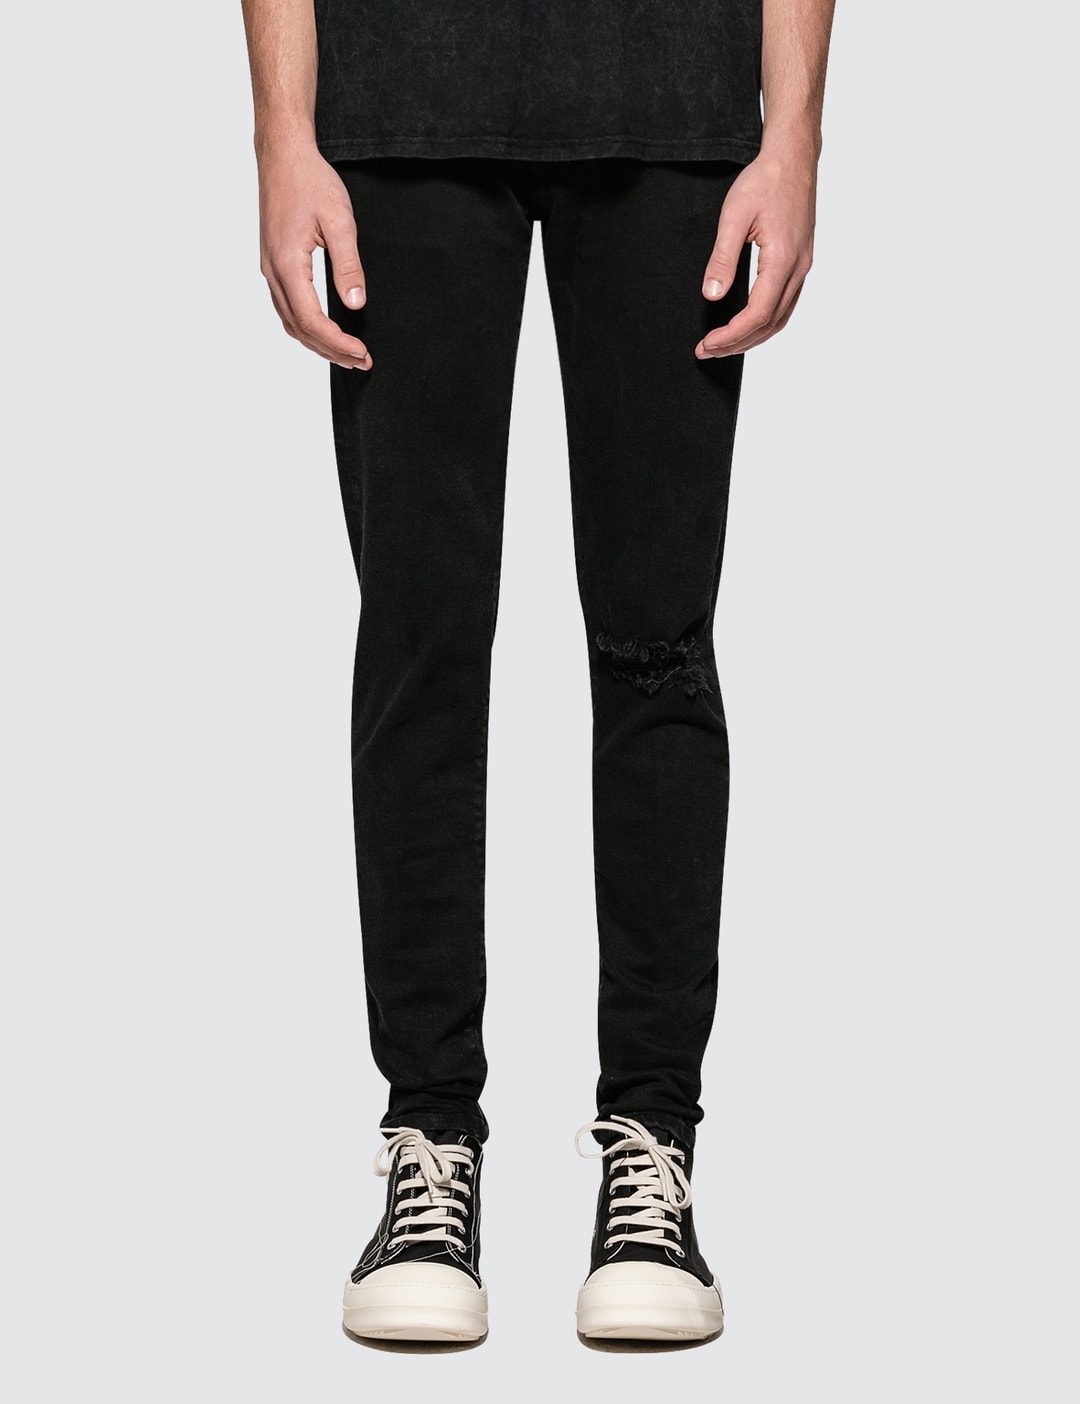 Monogram' BARA slim-fit jeans, Men's